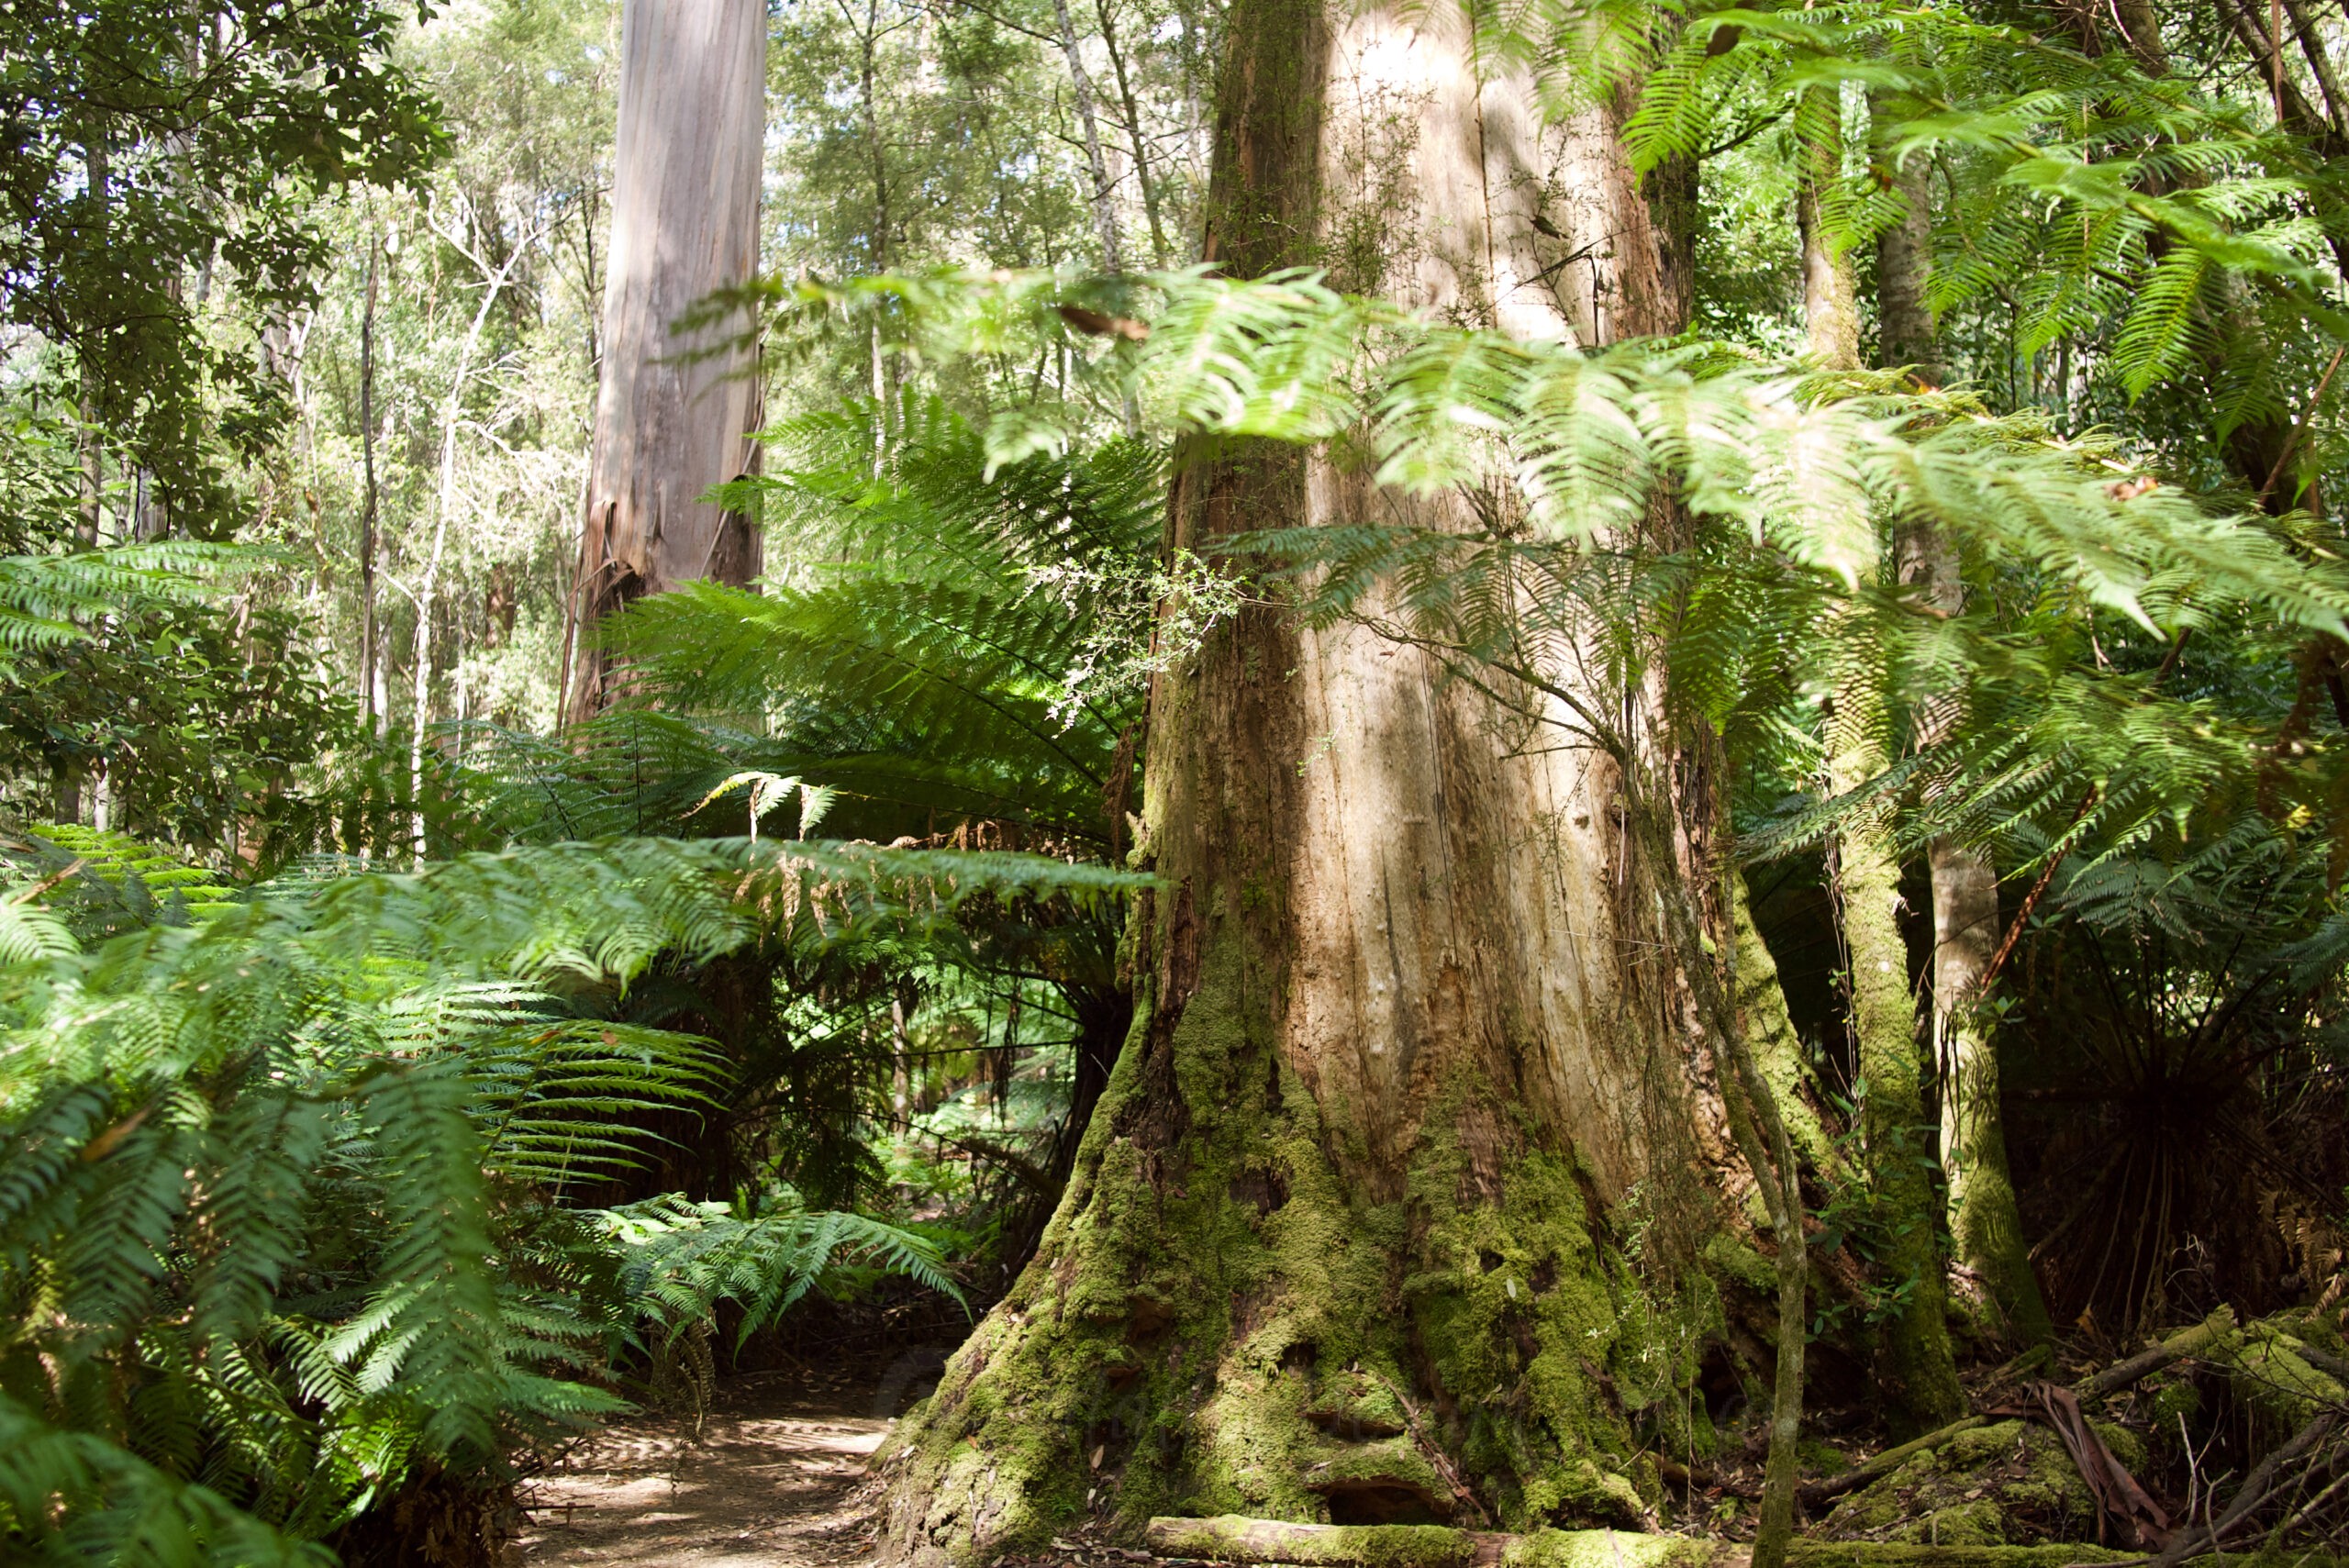 The Tallest Flowering Trees: Eucalyptus regnans